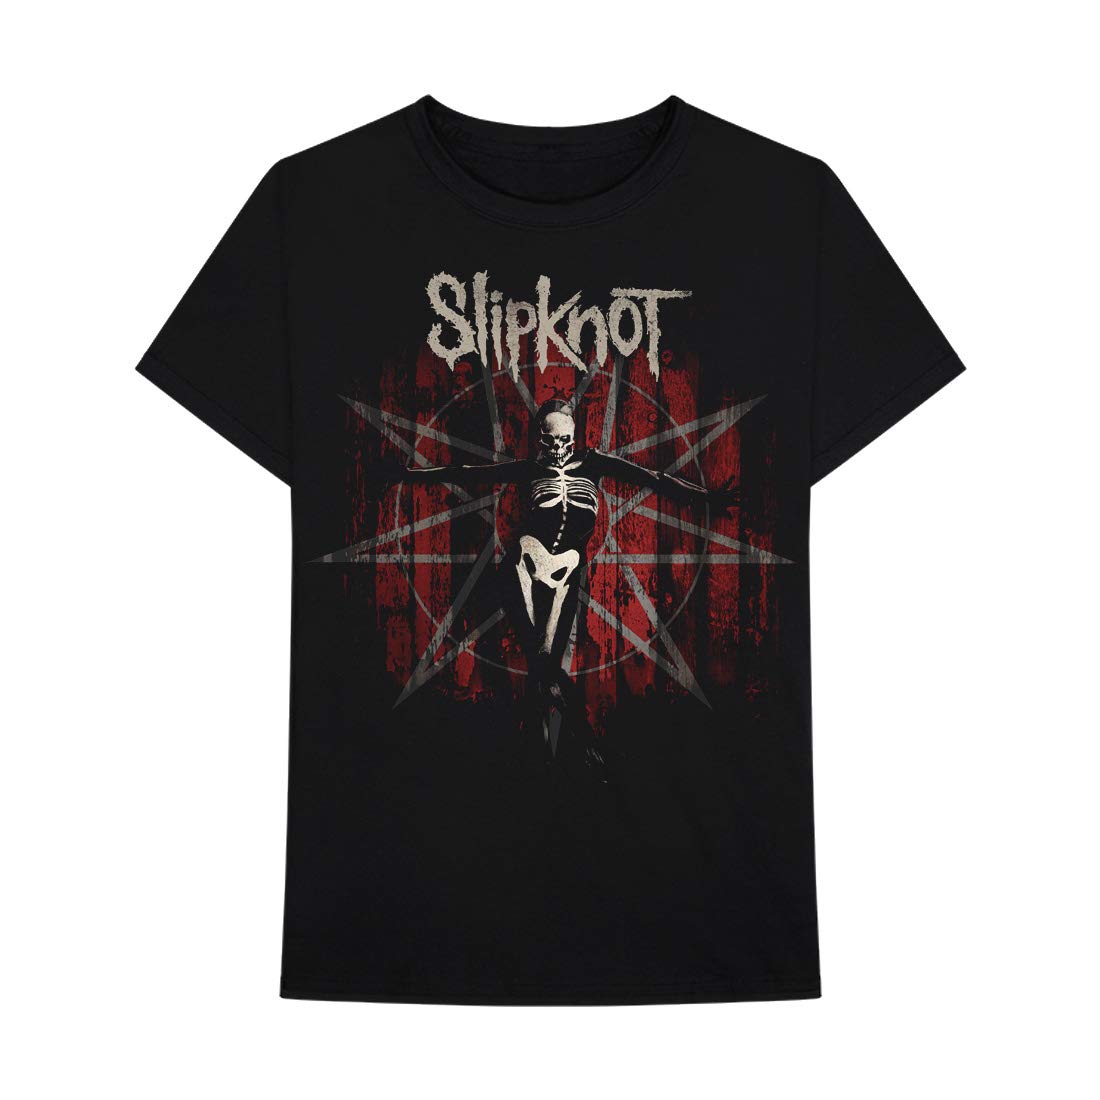 Slipknot Gray Chapter Star Black T-Shirt